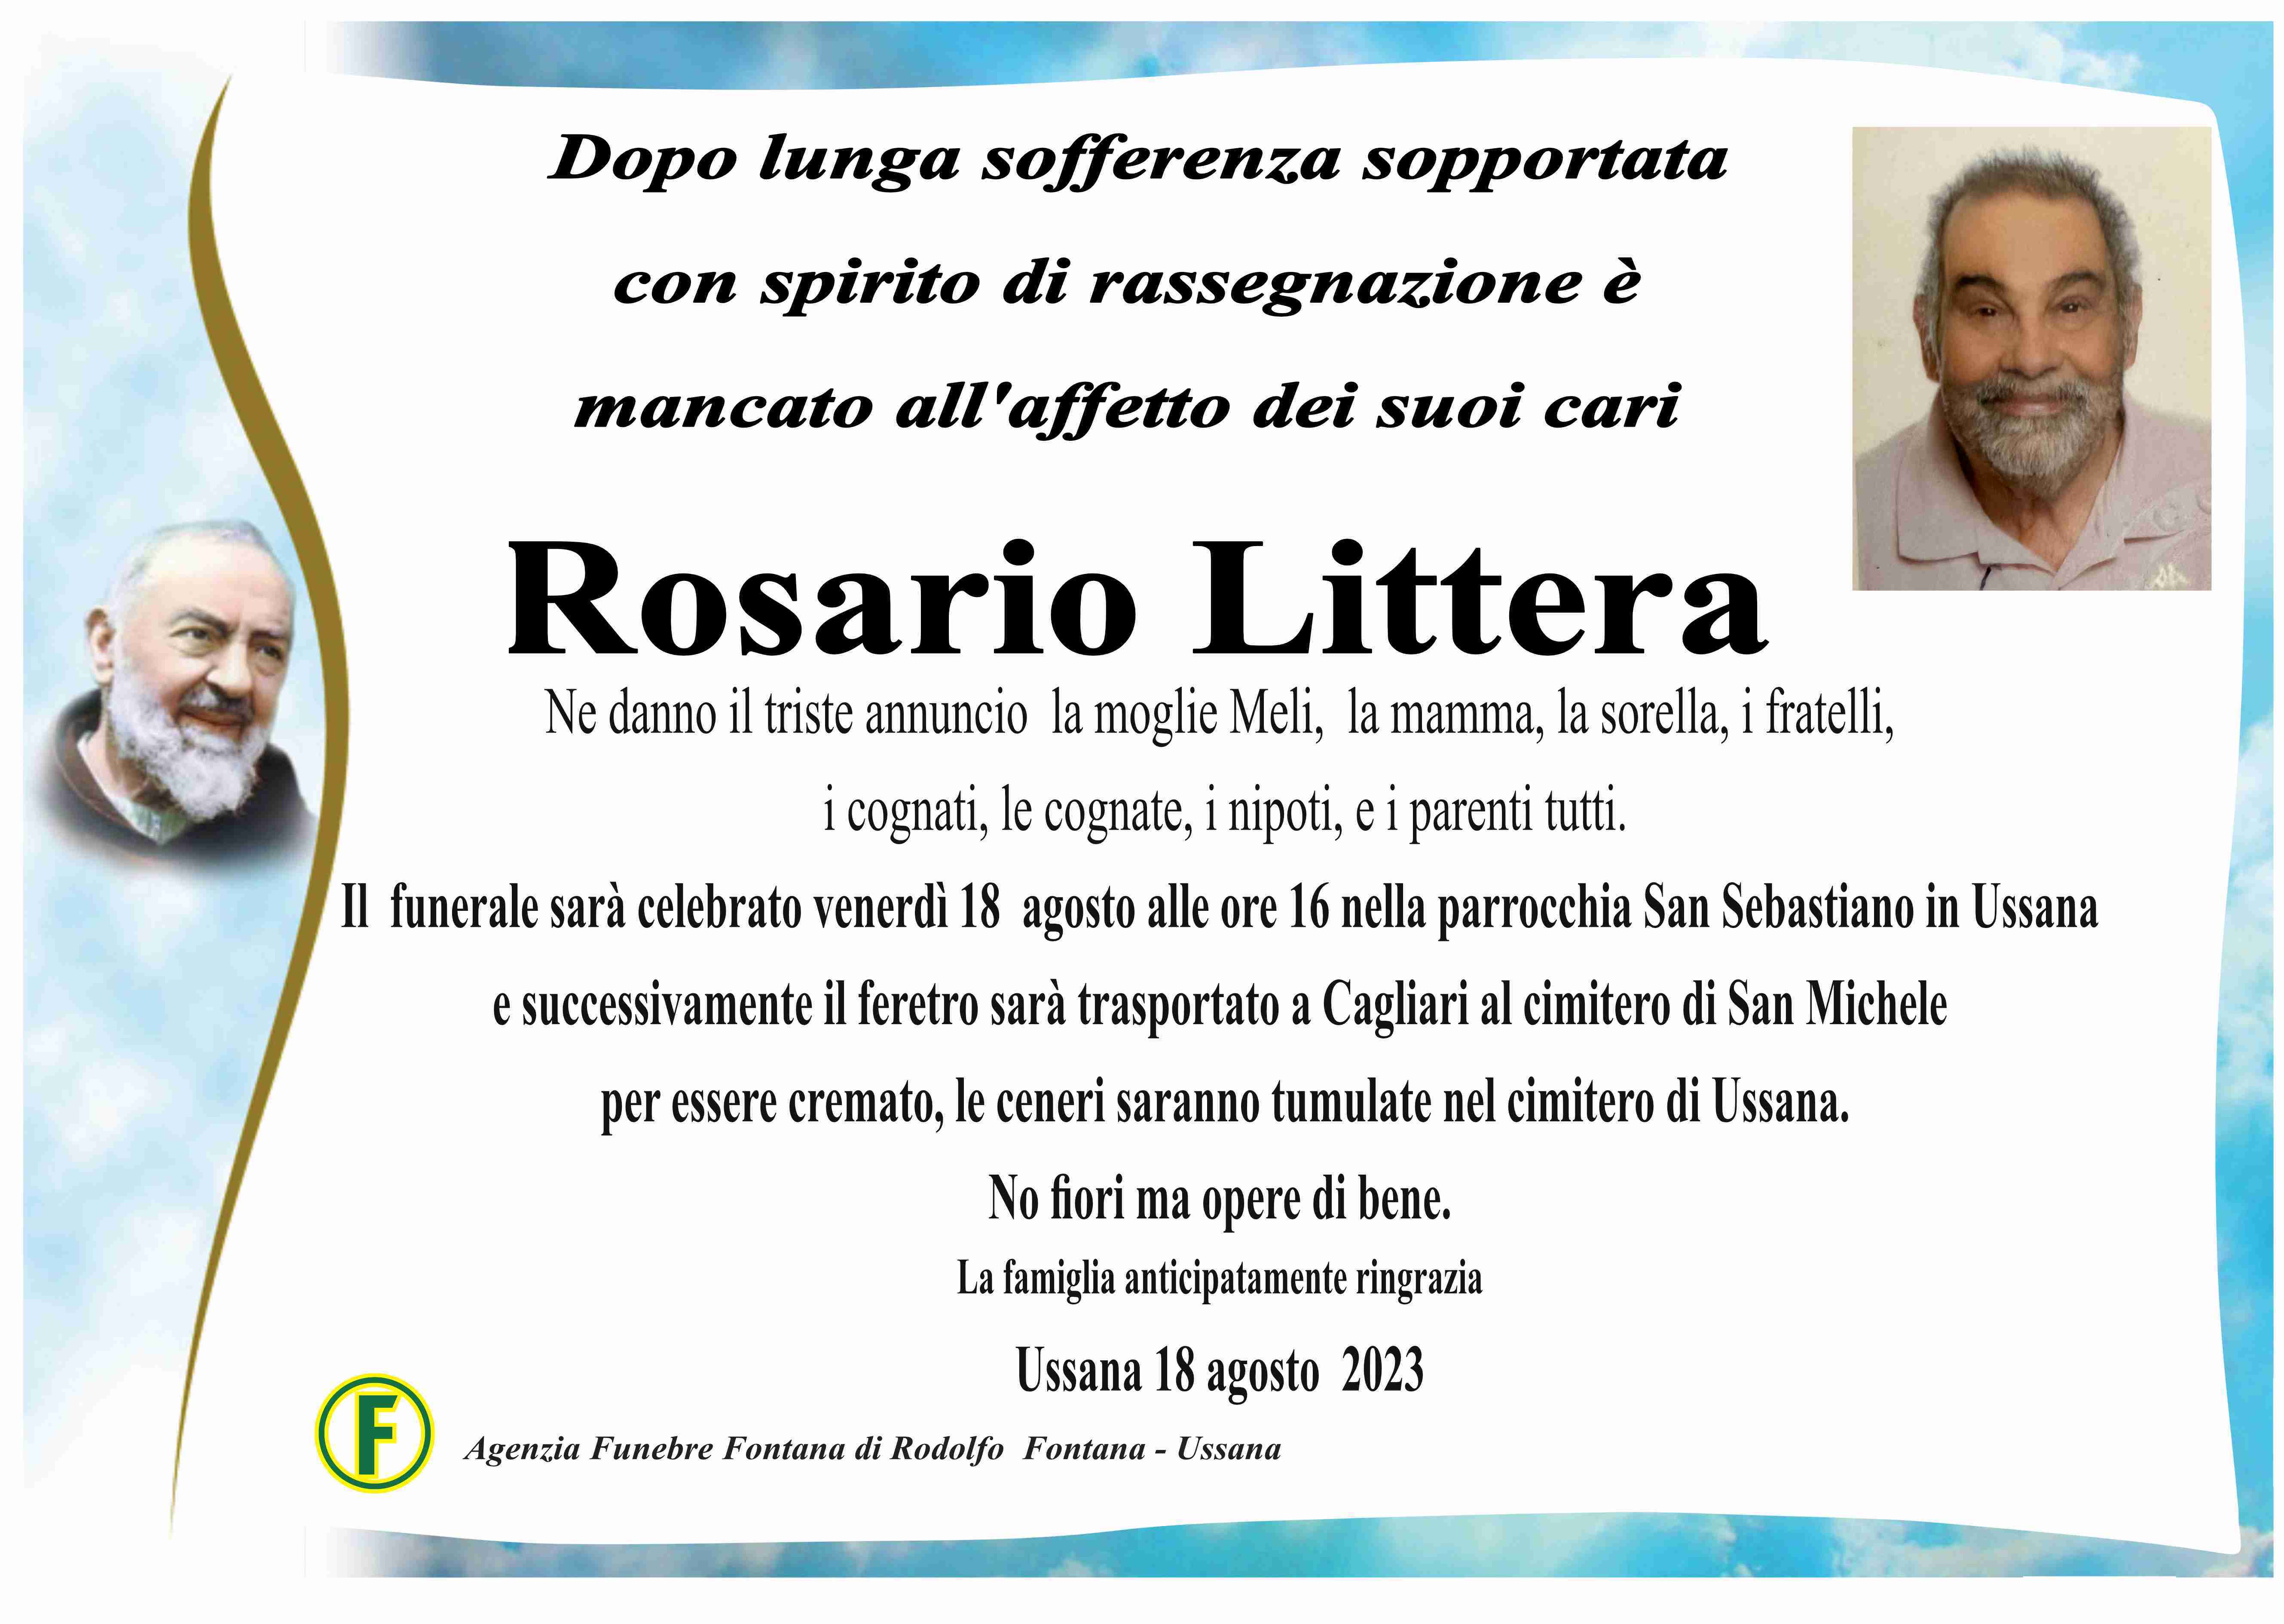 Rosario Littera